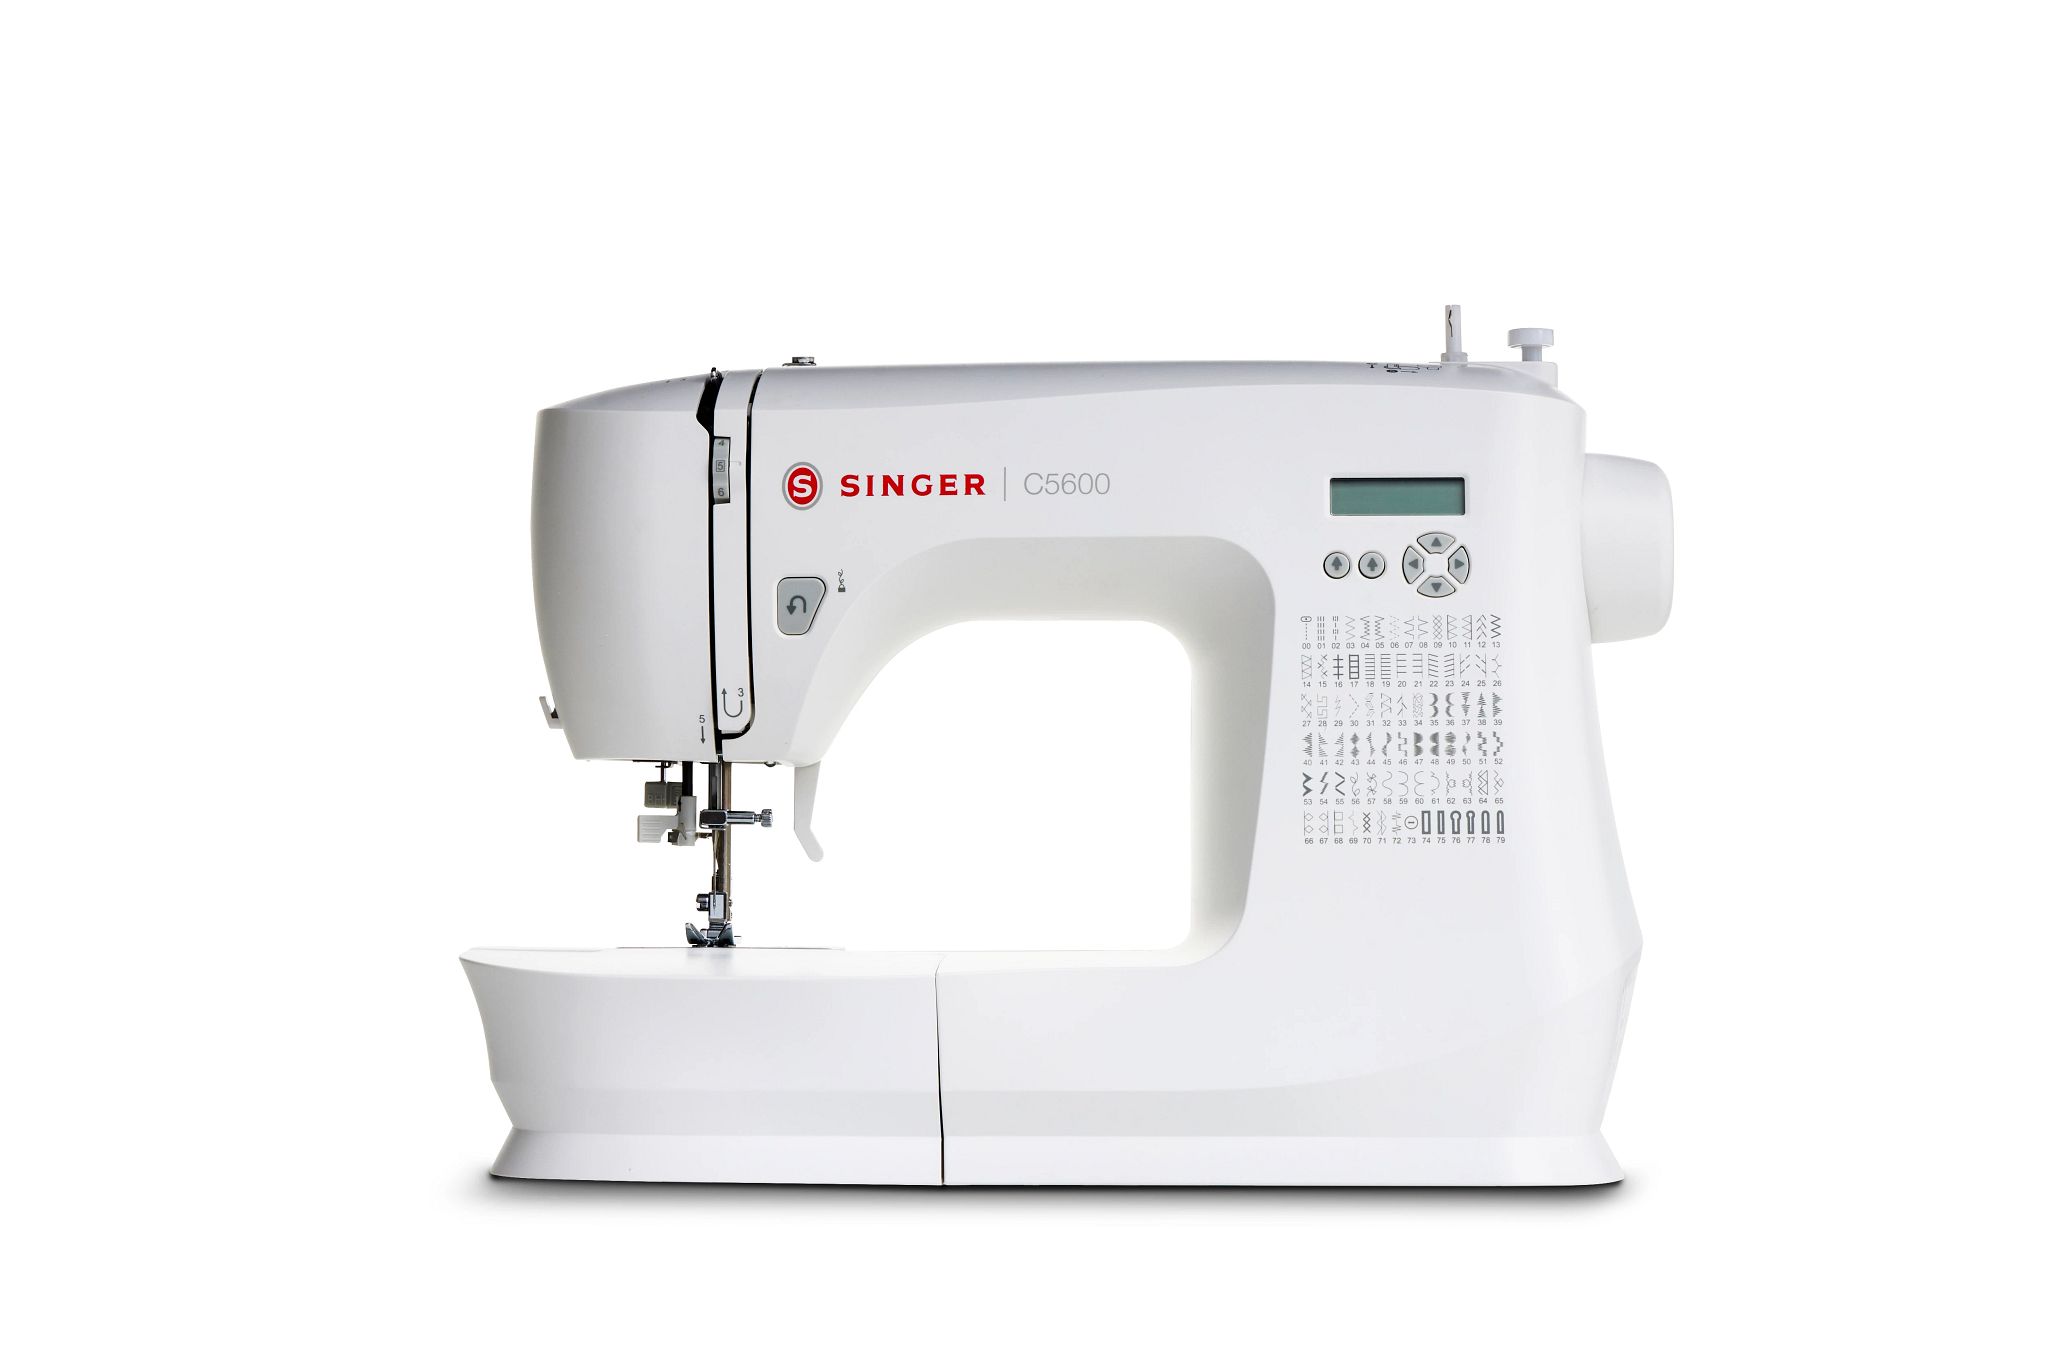 C5600 singer sewing machine